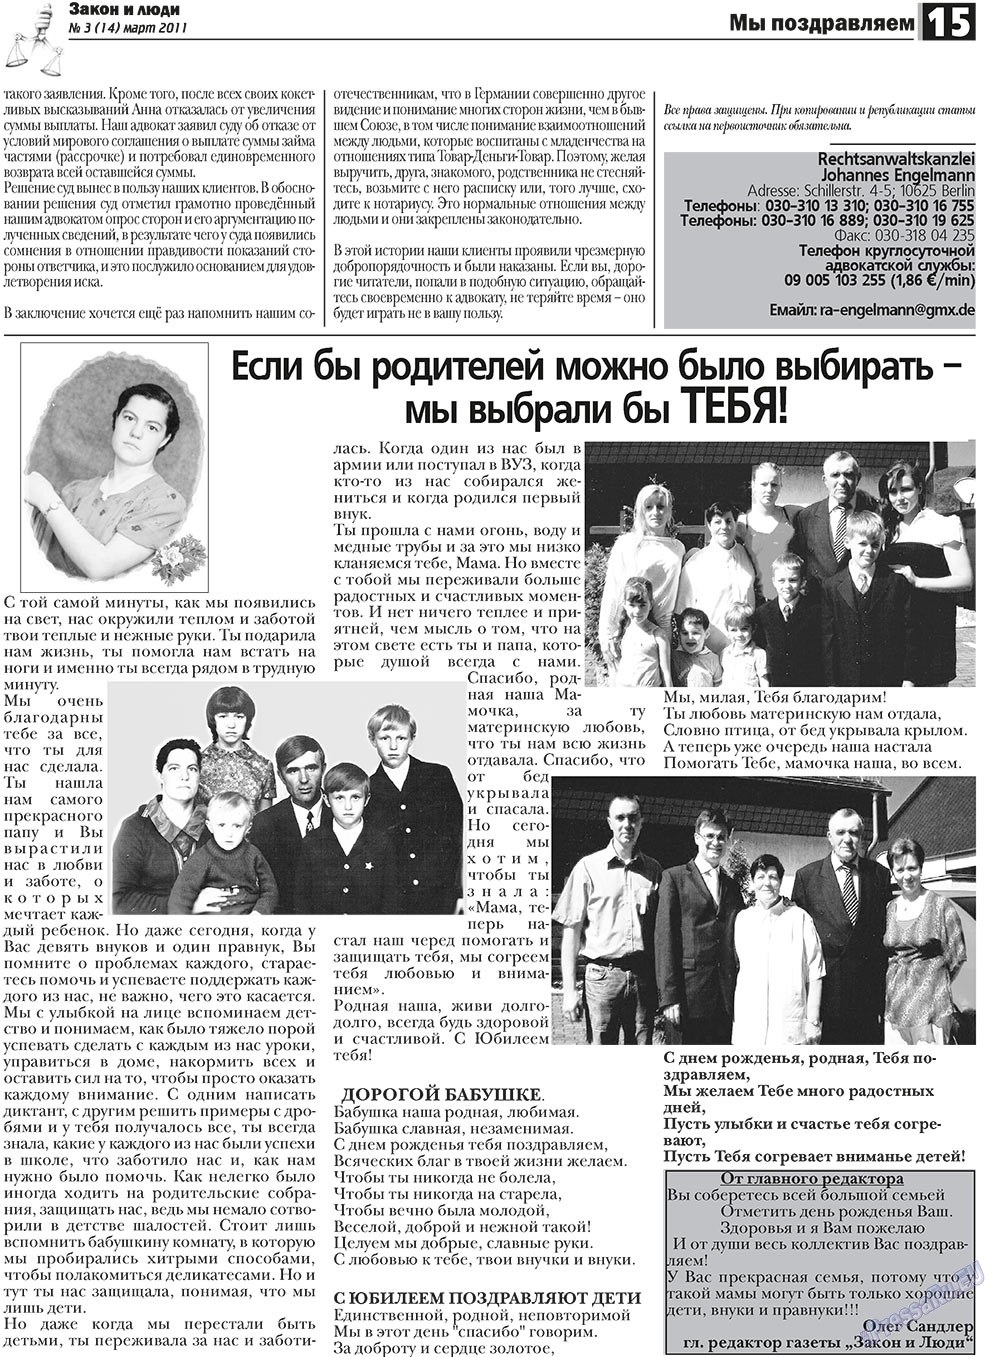 Закон и люди, газета. 2011 №3 стр.15